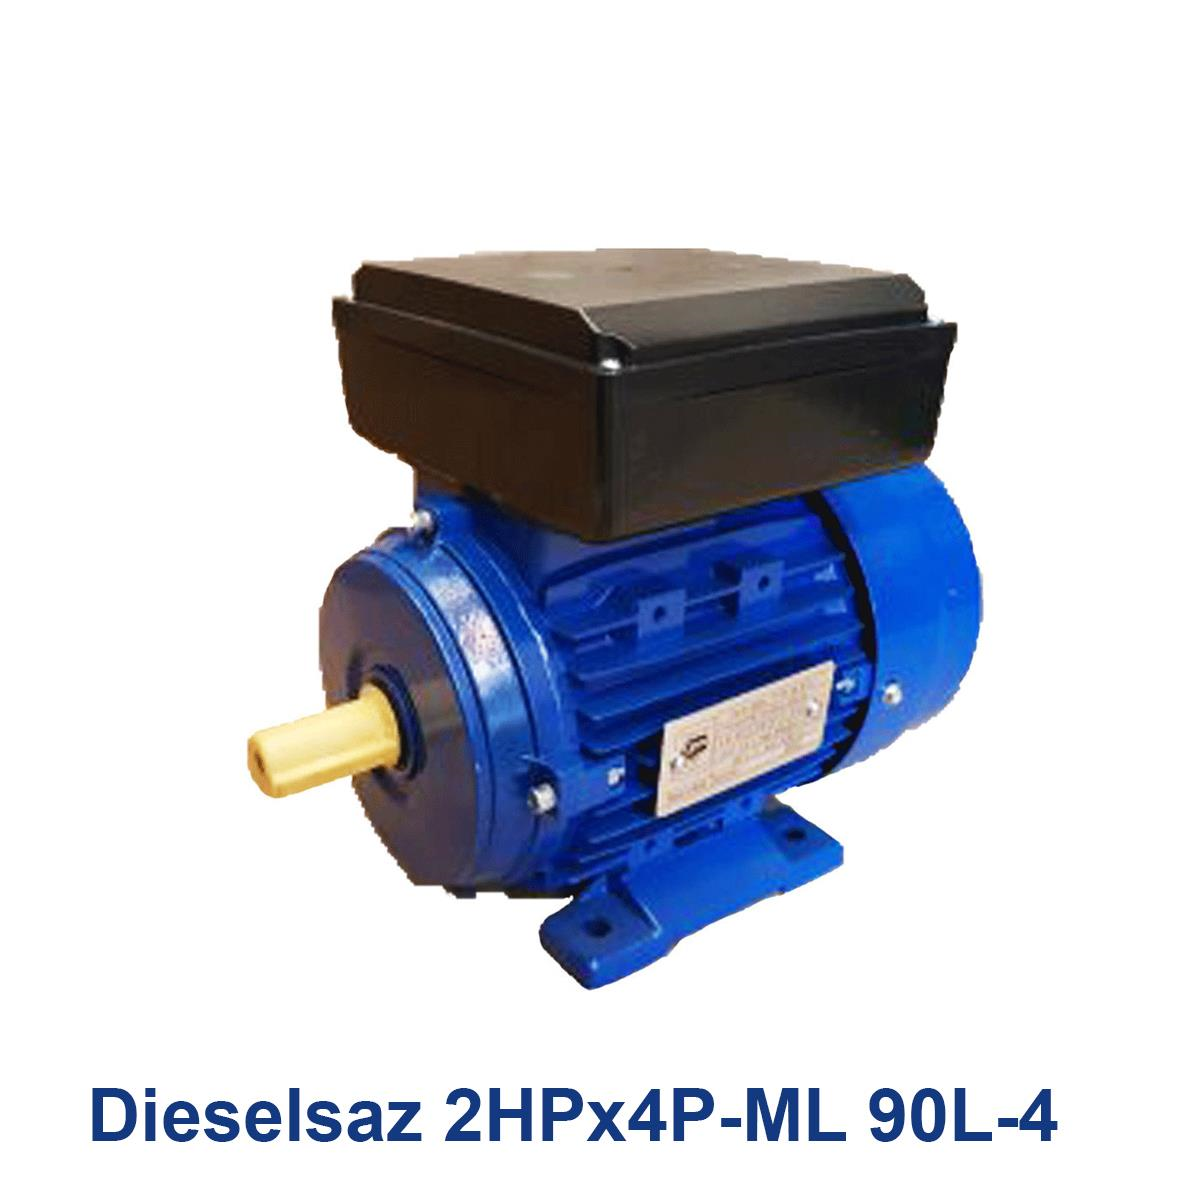 Dieselsaz-2HPx4P-ML-90L-4